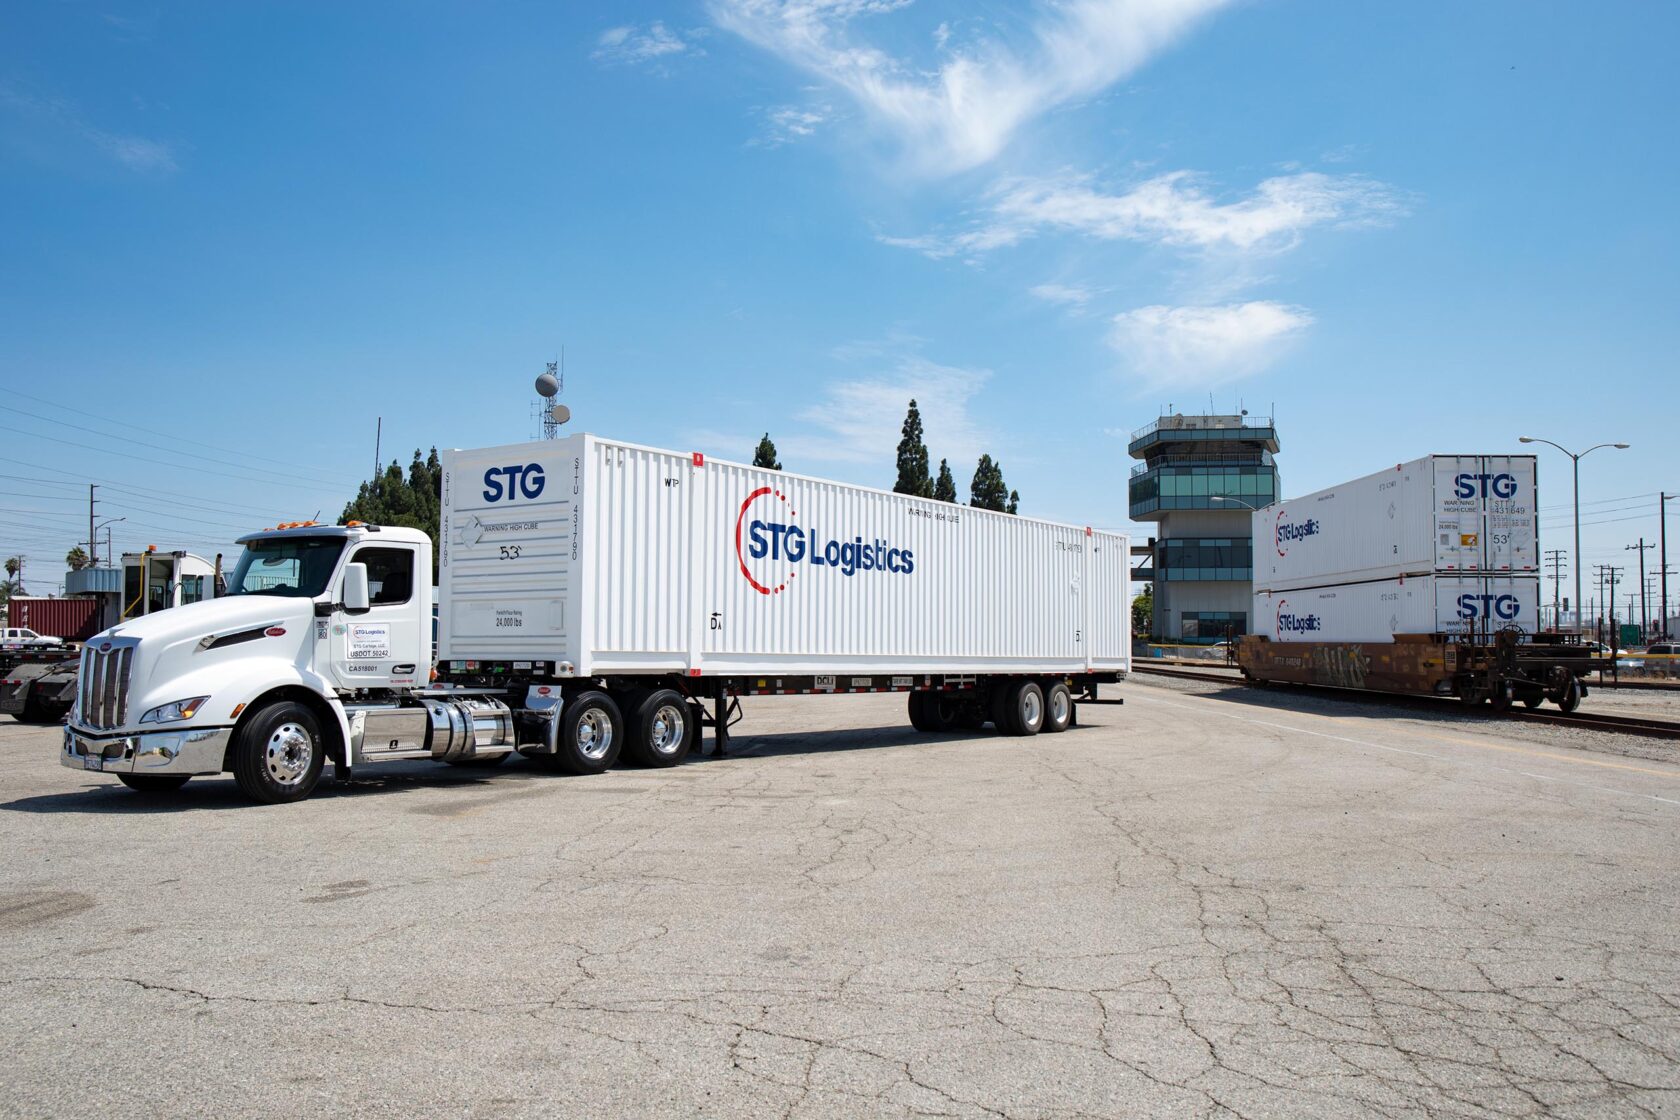 STG logistics trucks.